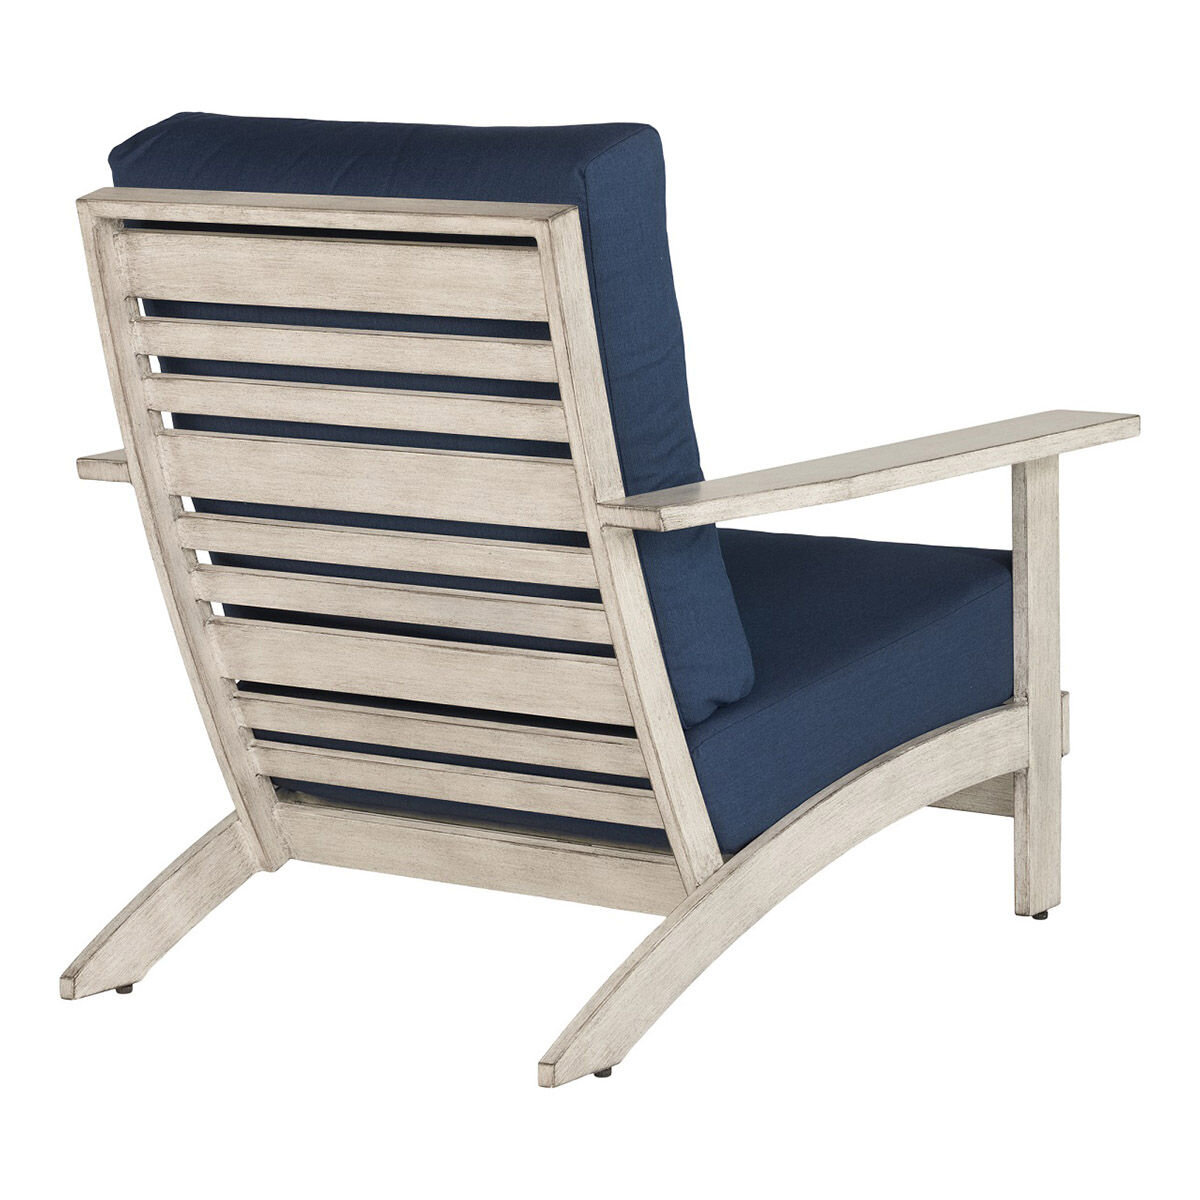 ATLeisure 戶外休閒桌椅三件組 藍色